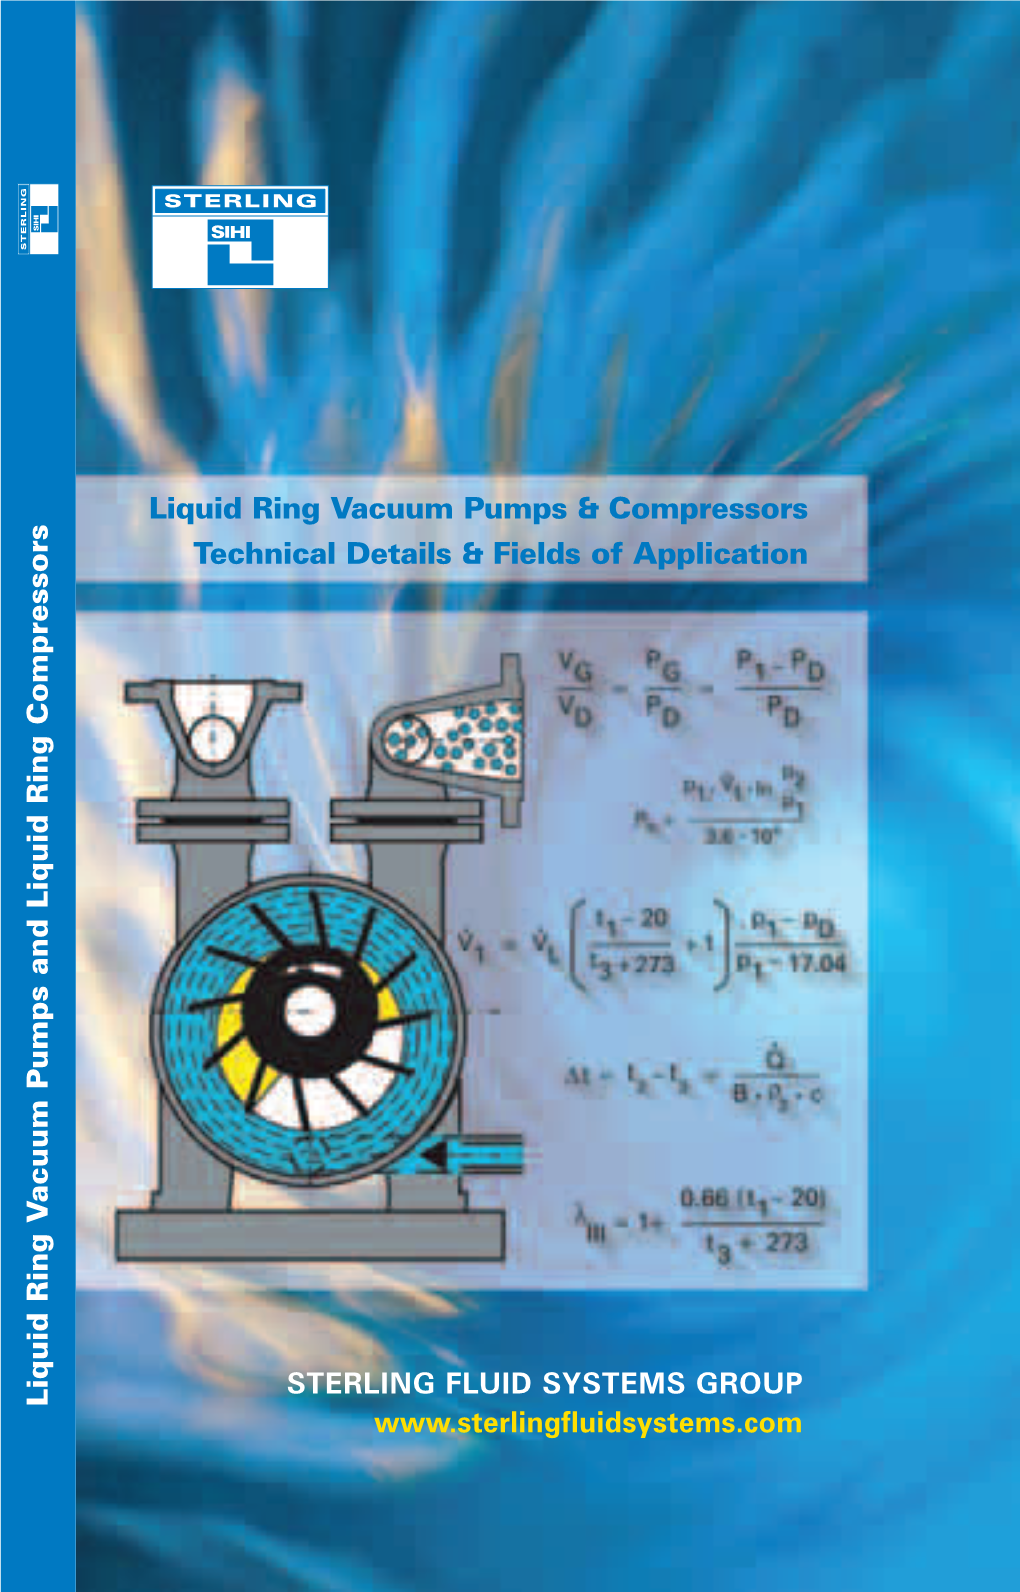 Liquid Ring Vacuum Pumps and Compressors